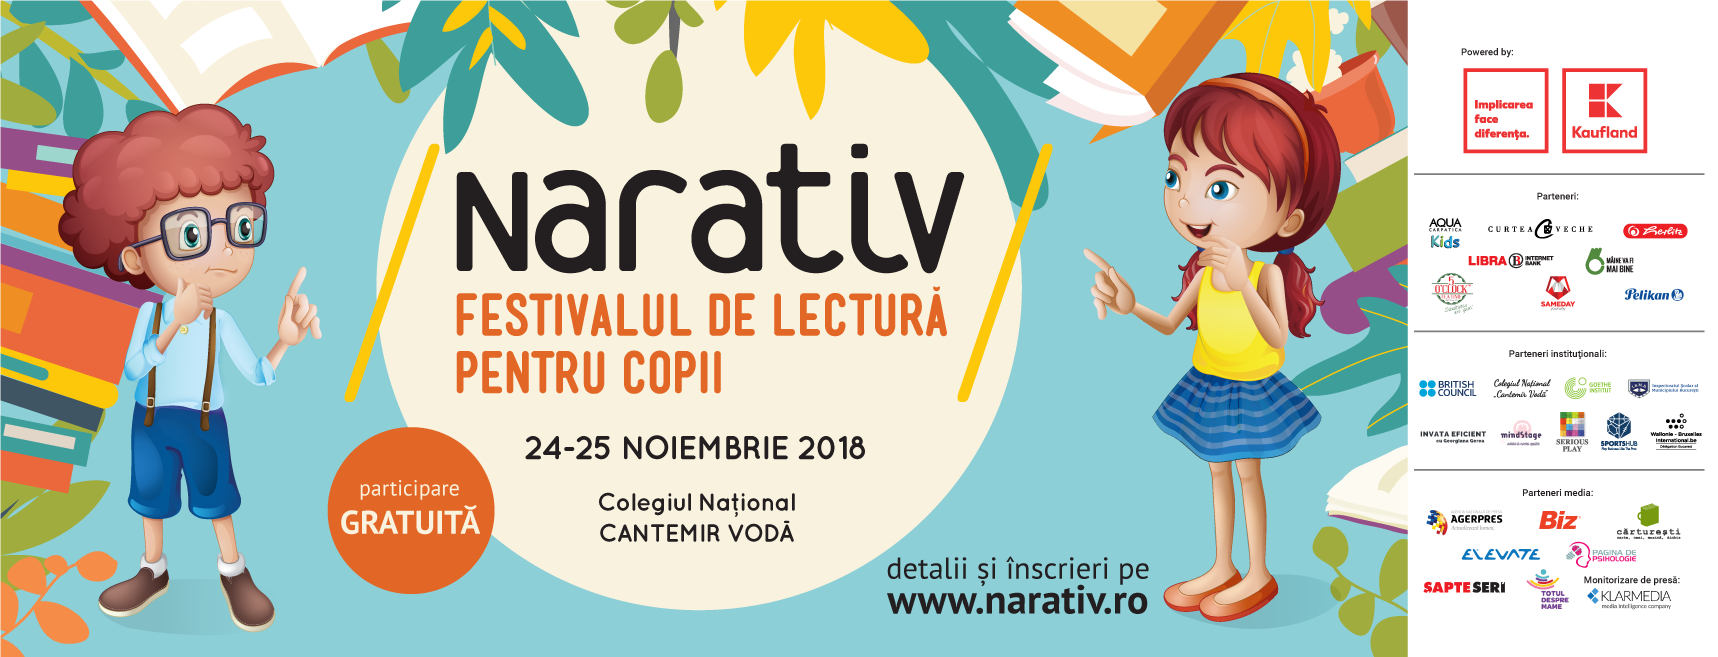 Poveștile prind viață în acest weekend la Festivalul NARATIV! Rezervă-ți acum locul gratuit!